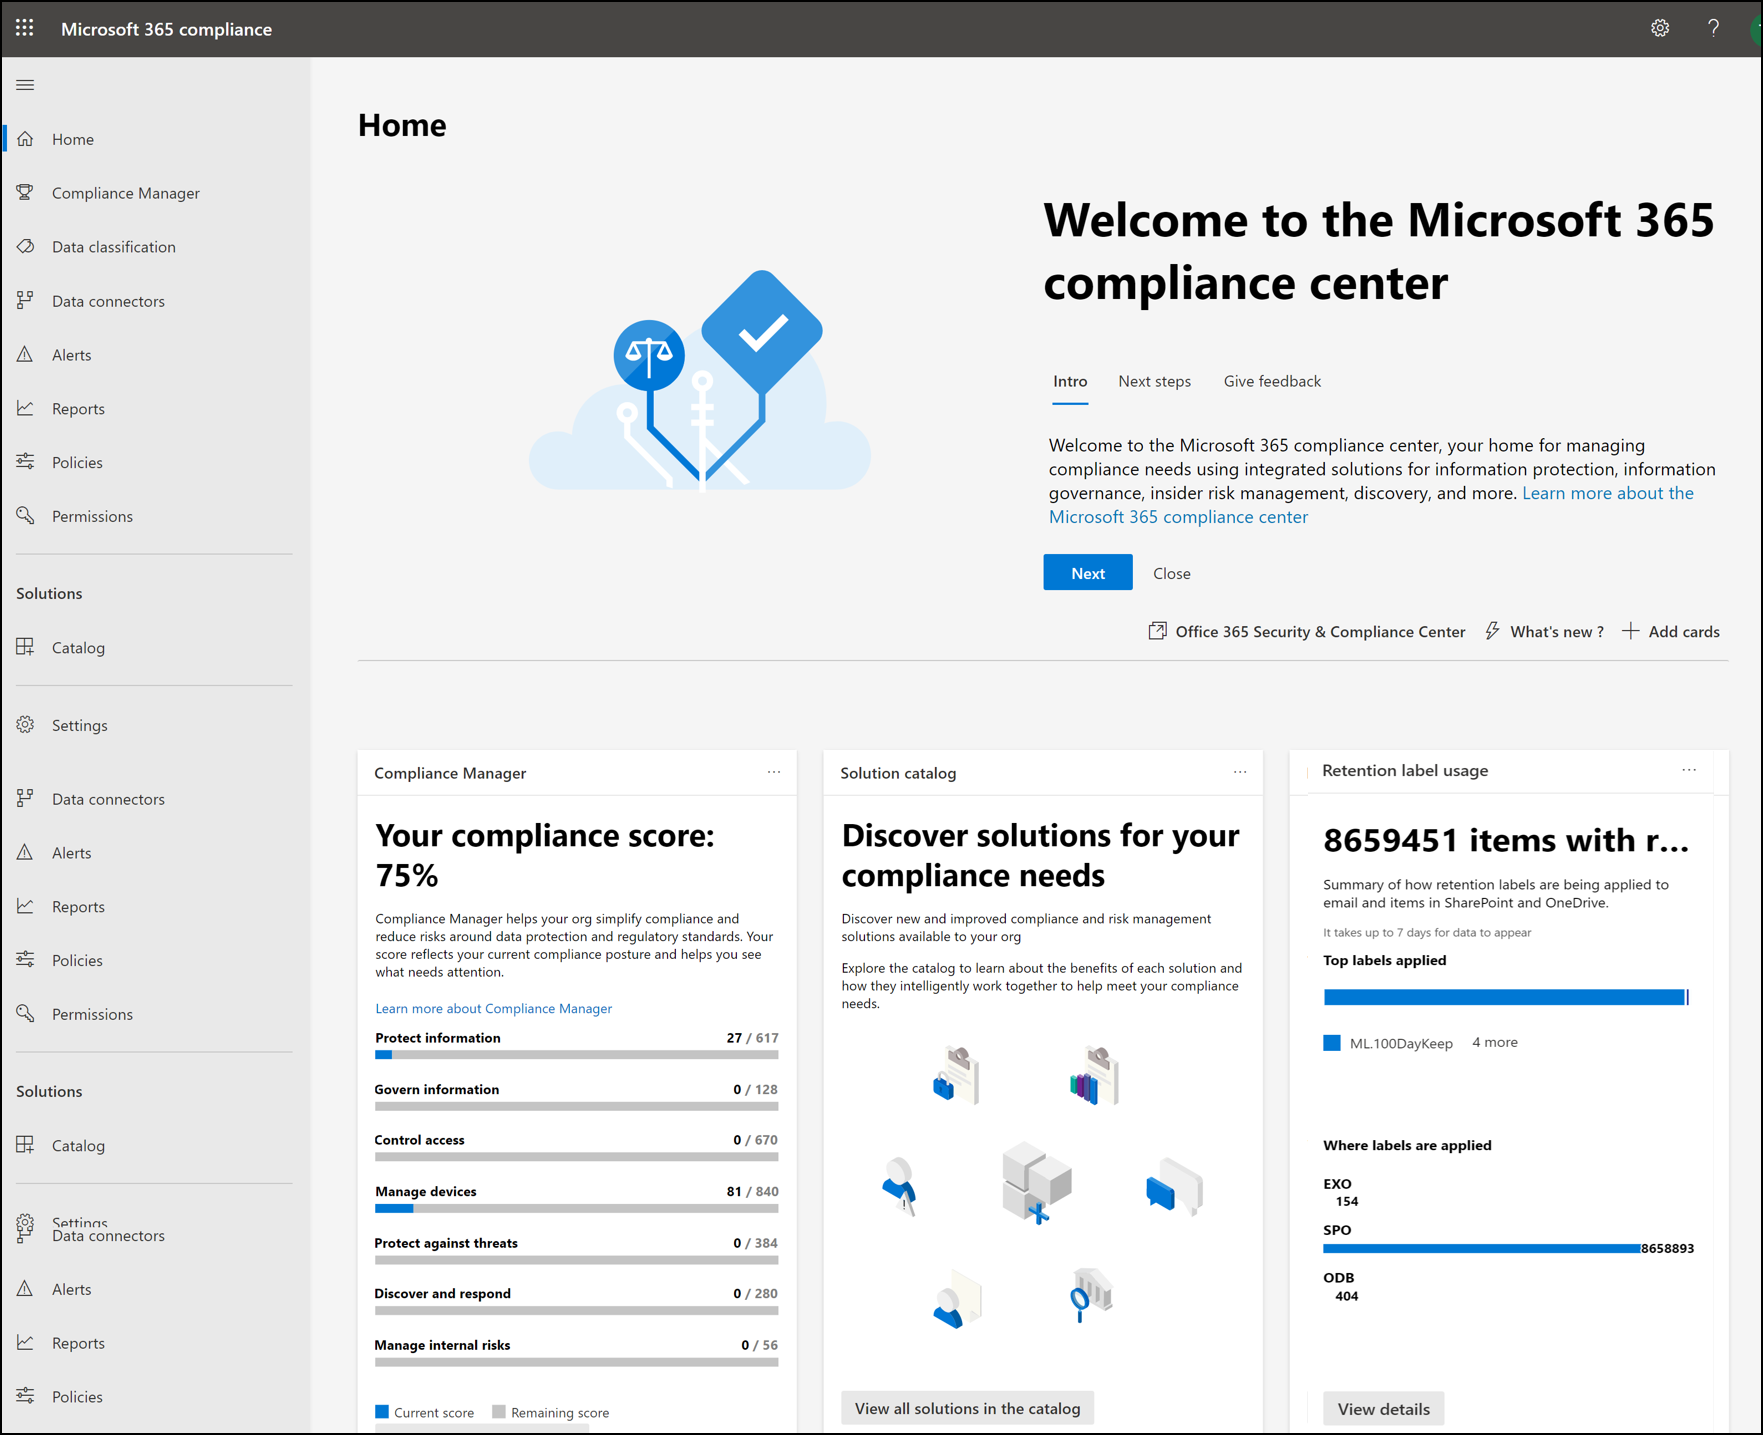 Home page do portal de conformidade do Microsoft Purview.